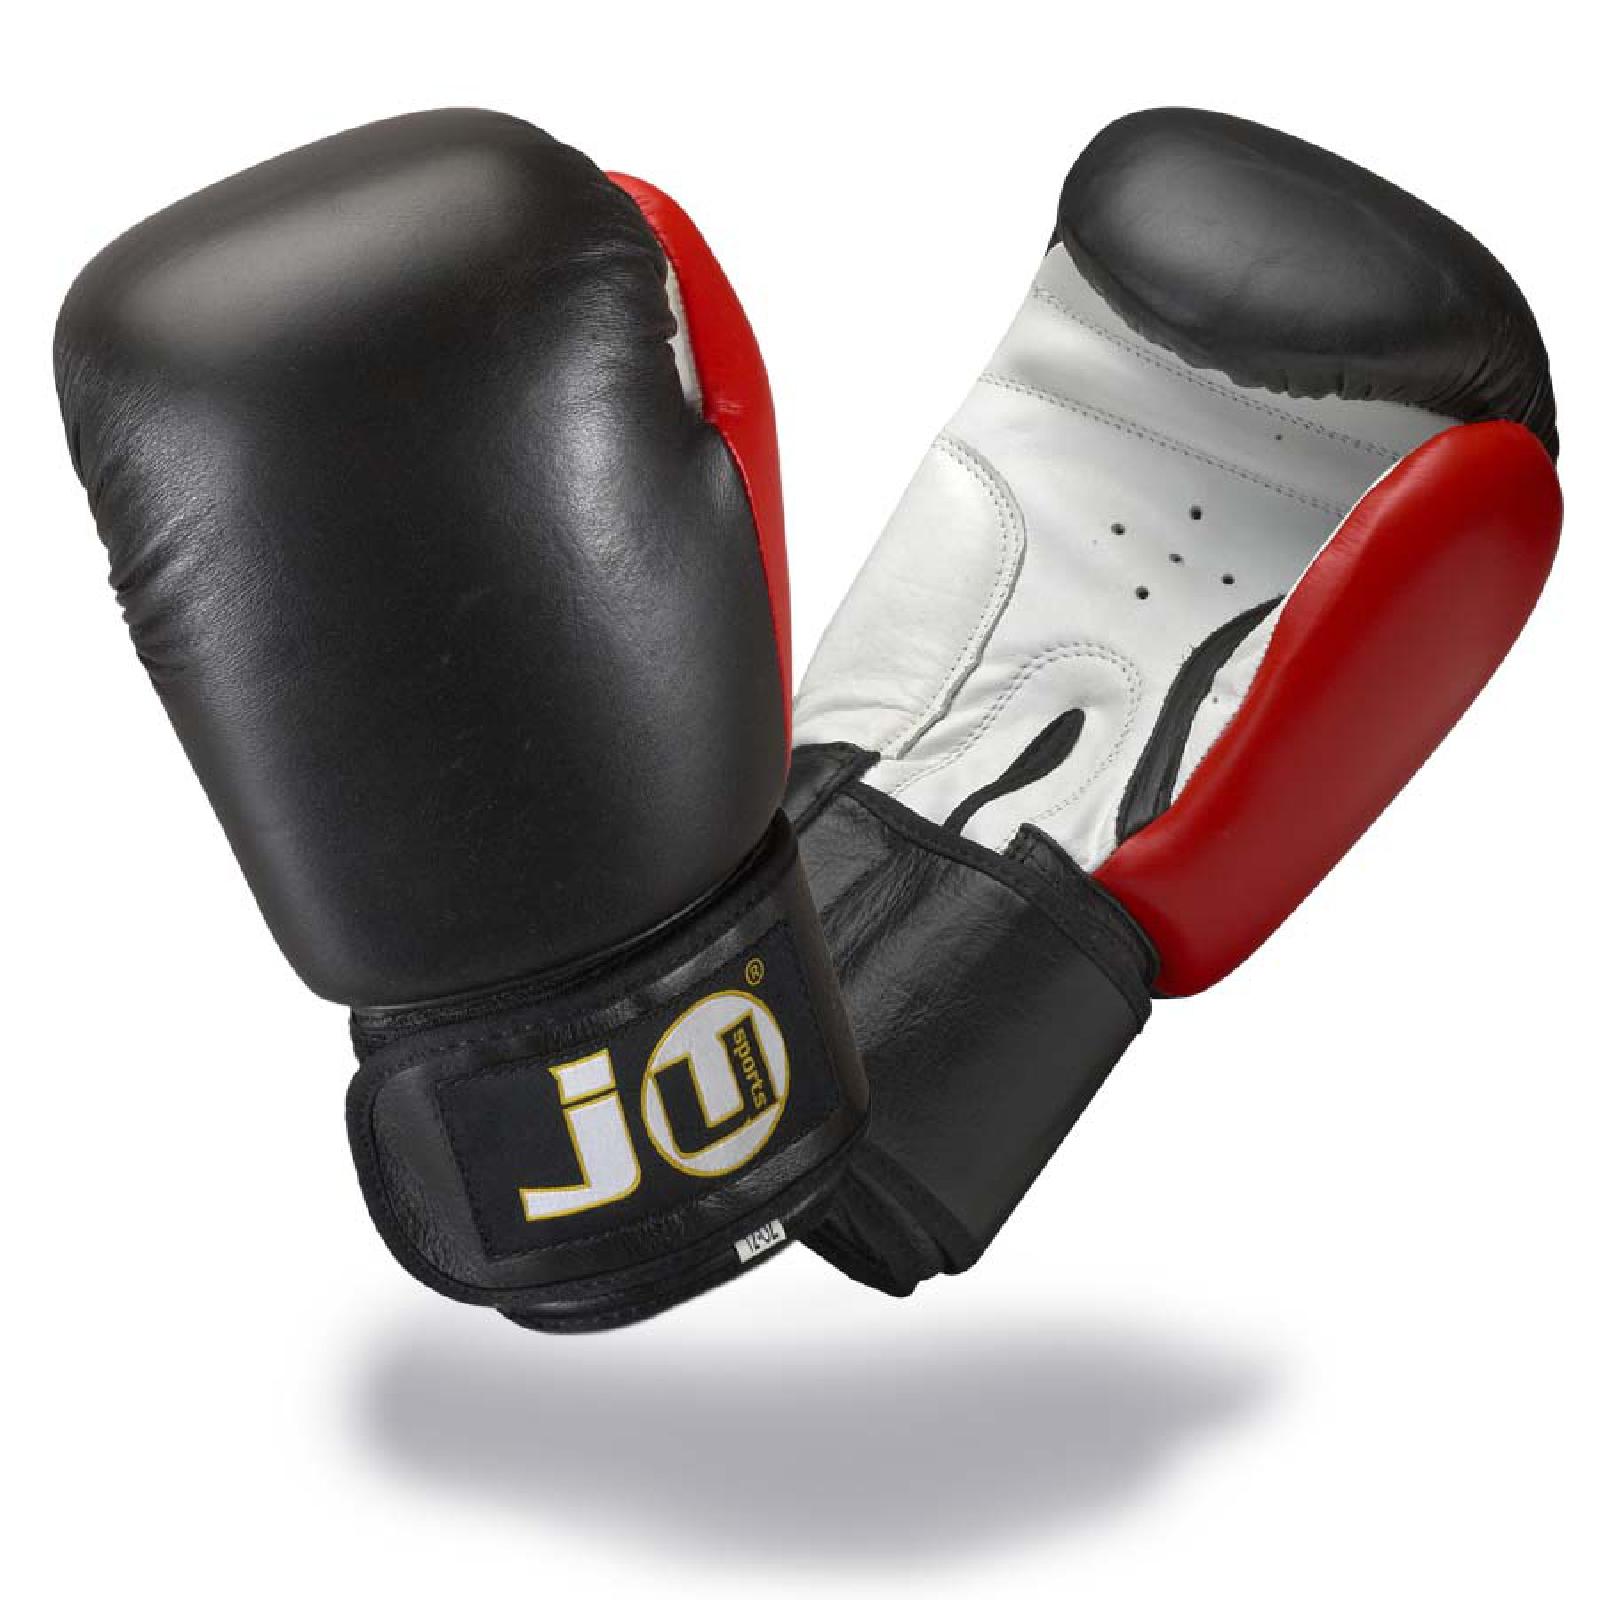 Leder Boxhandschuhe plus | Ju-Sports KAMPFHELDEN